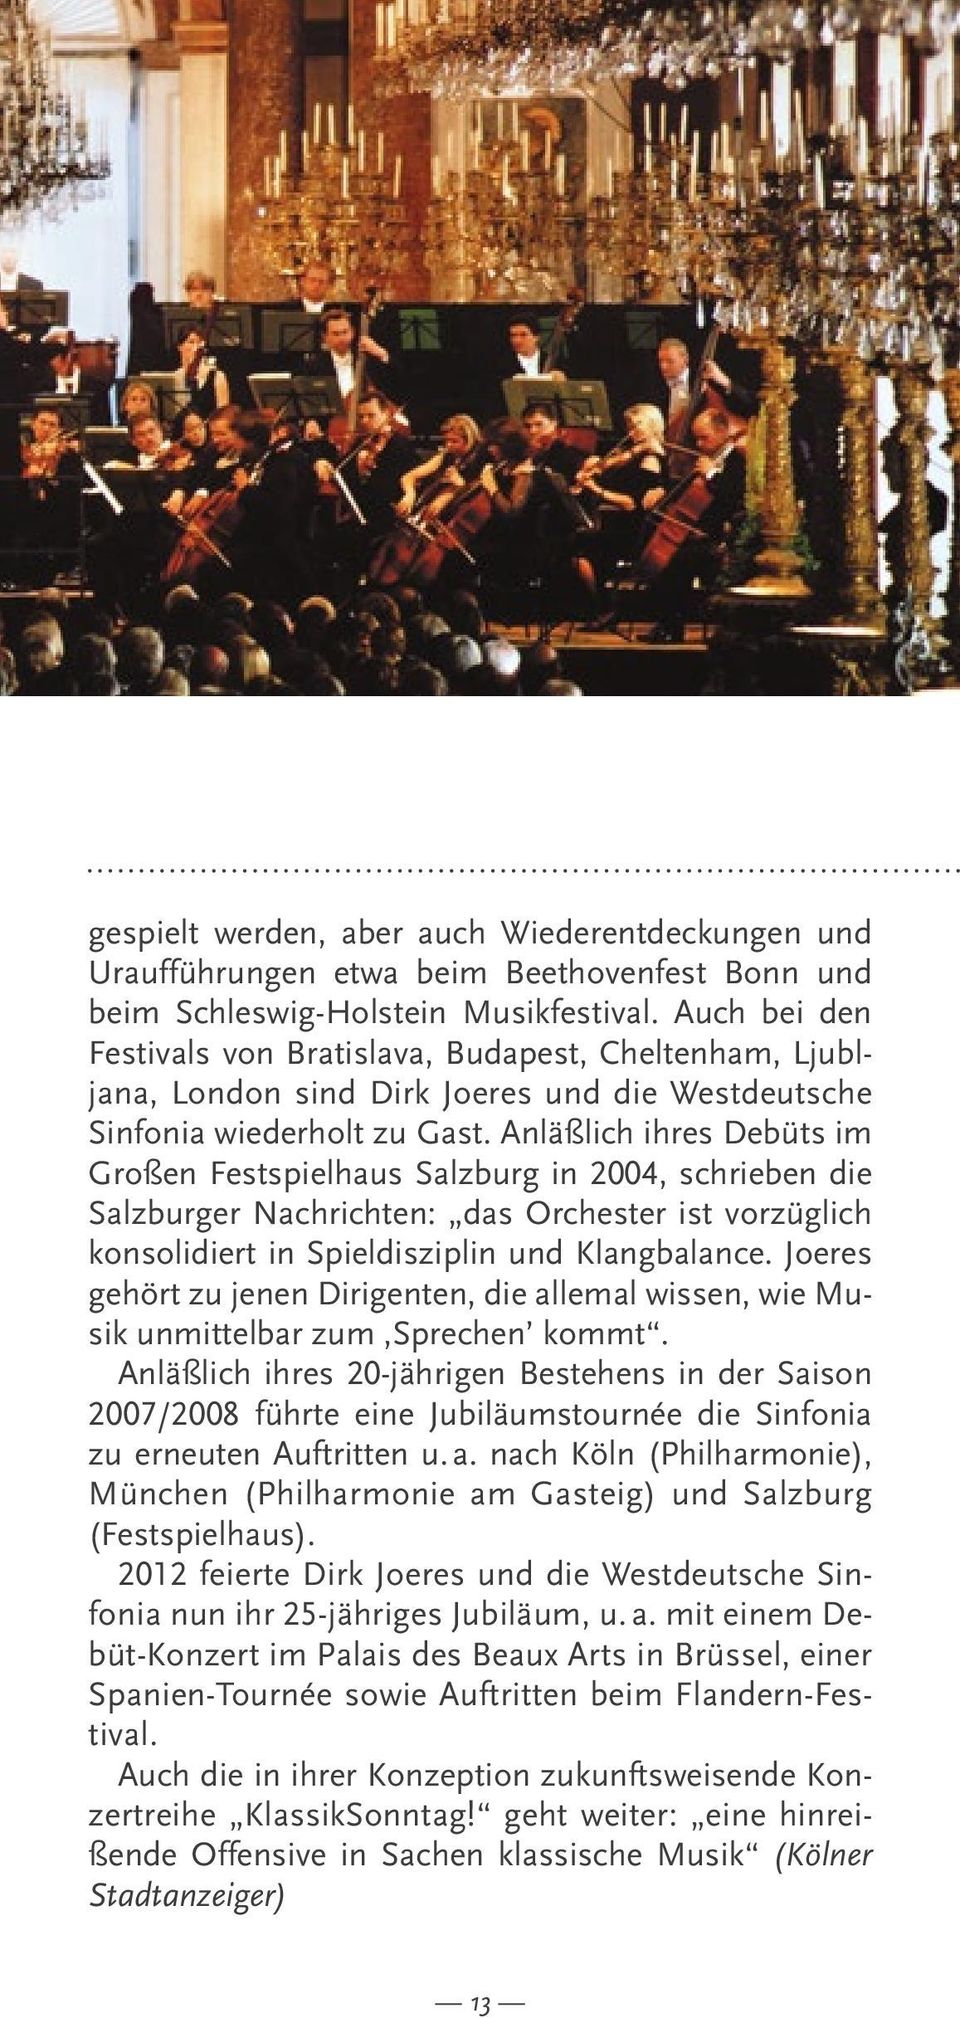 Anläßlich ihres Debüts im Großen Festspielhaus Salzburg in 2004, schrieben die Salzburger Nachrichten: das Orchester ist vorzüglich konsolidiert in Spieldisziplin und Klangbalance.